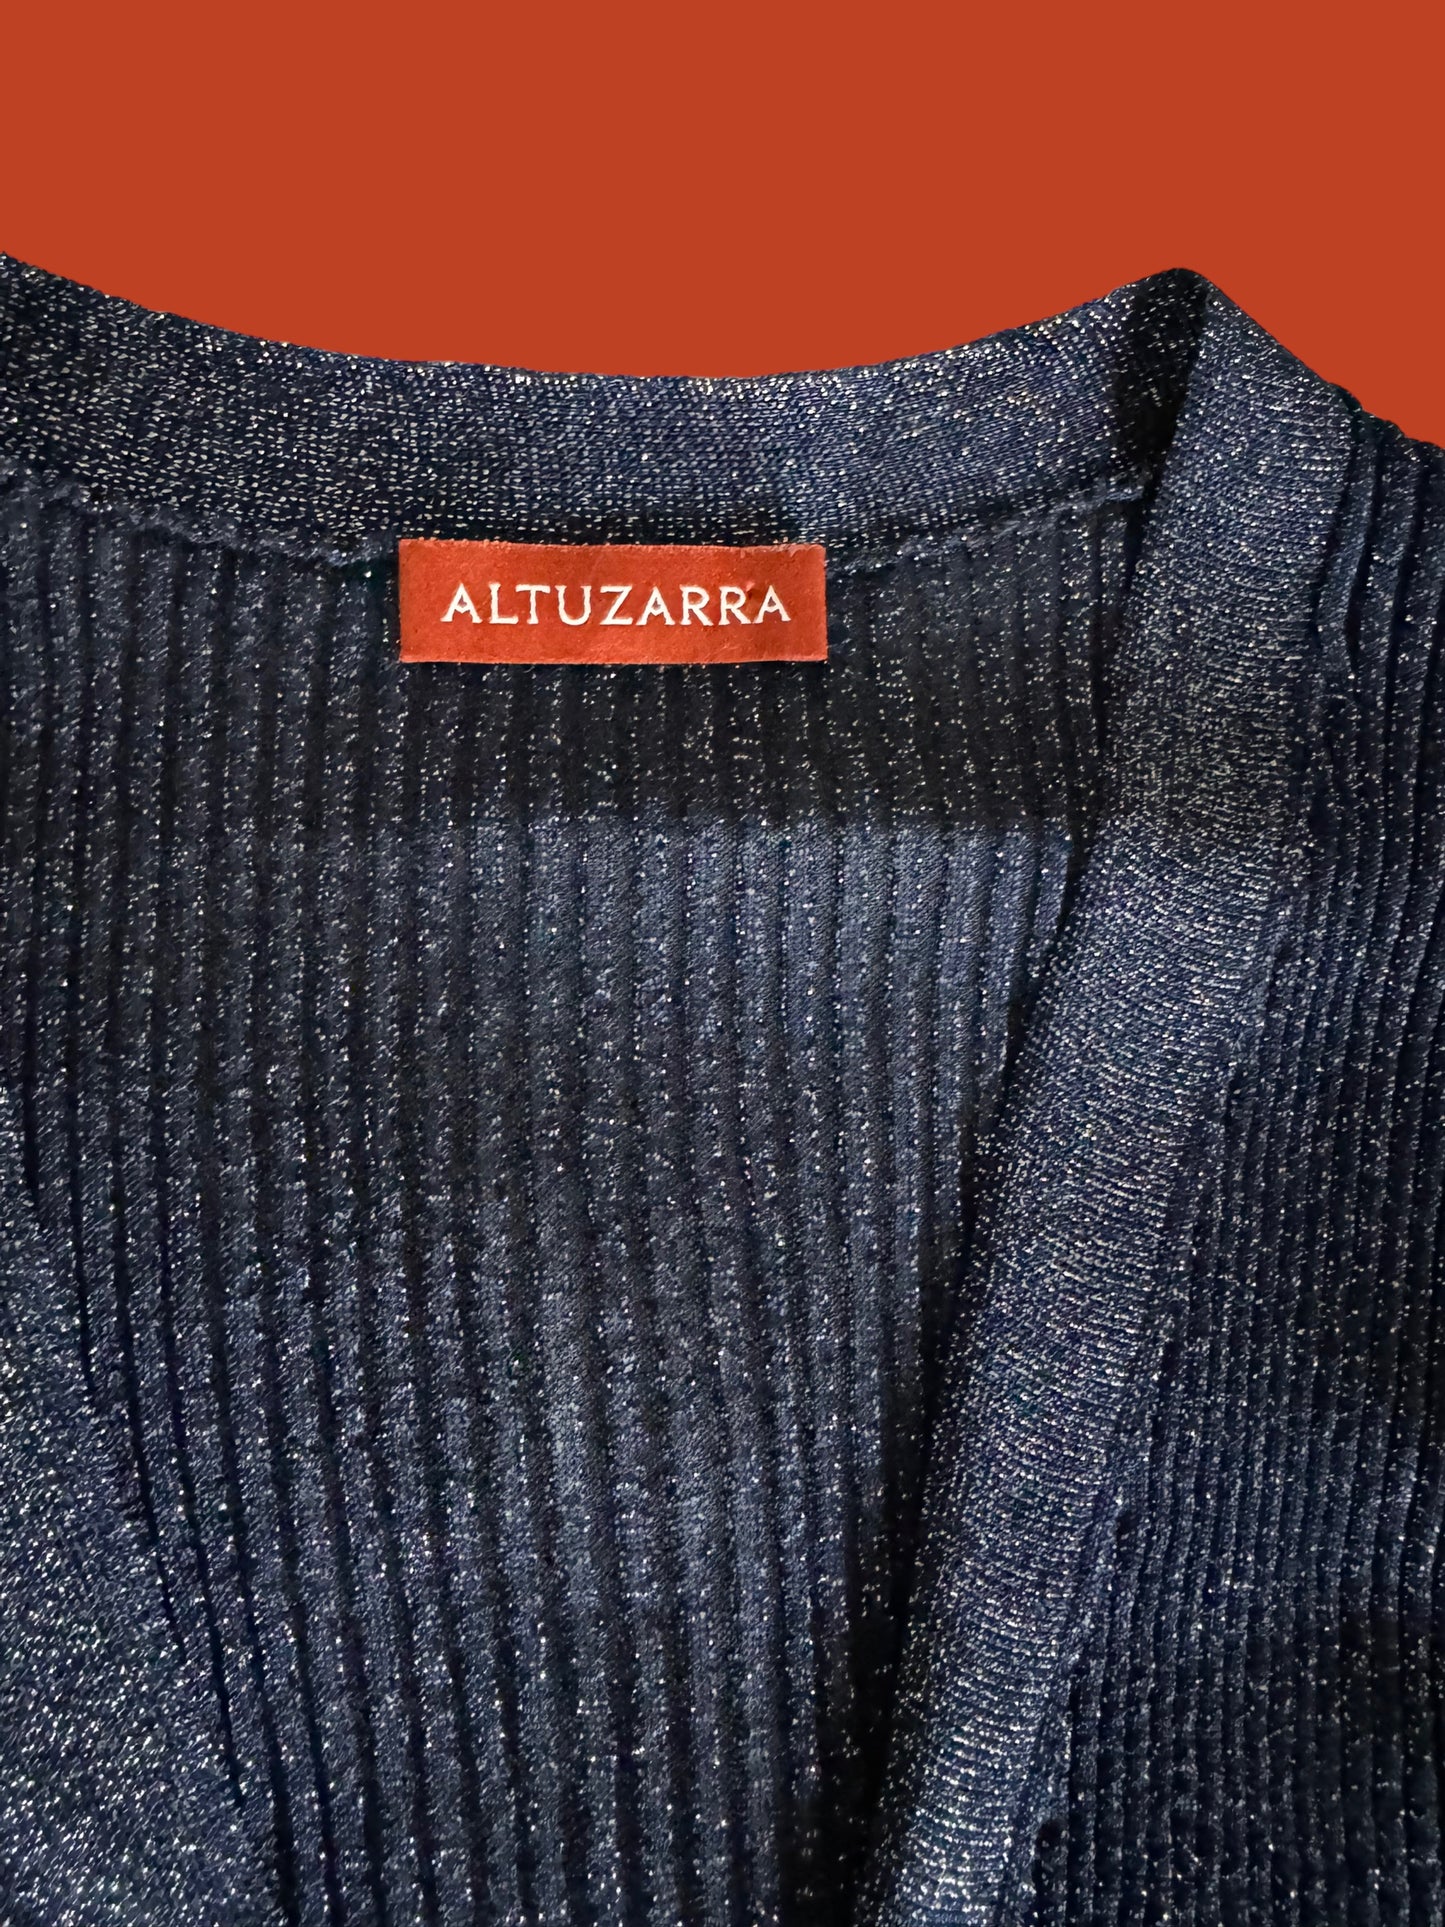 ALTUZARRA blue sparkle cardigan size xs